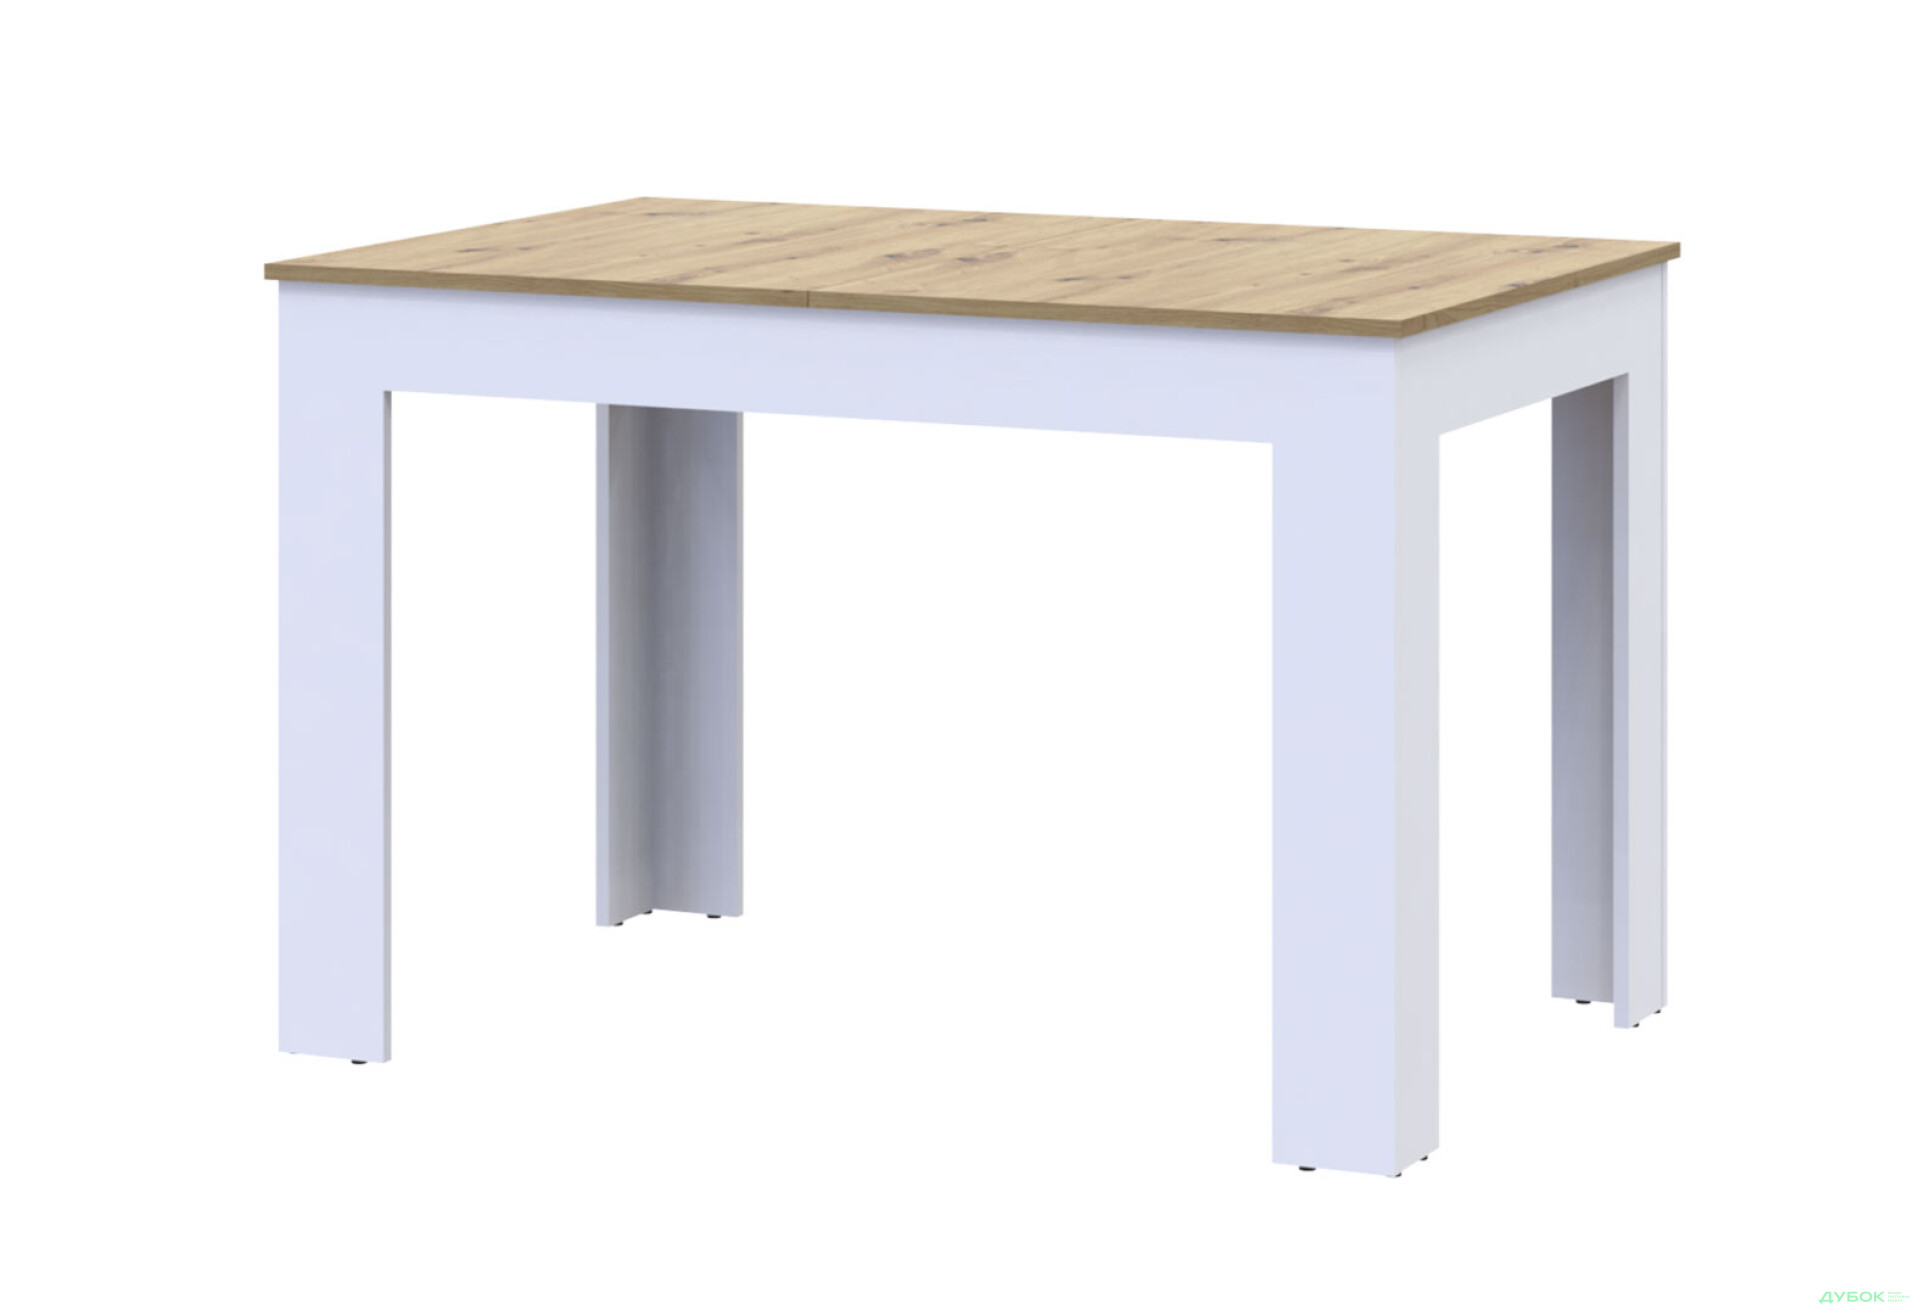 Фото 1 - Столовый стол Doros Флинт раскладной 120 см, белый / дуб артизан